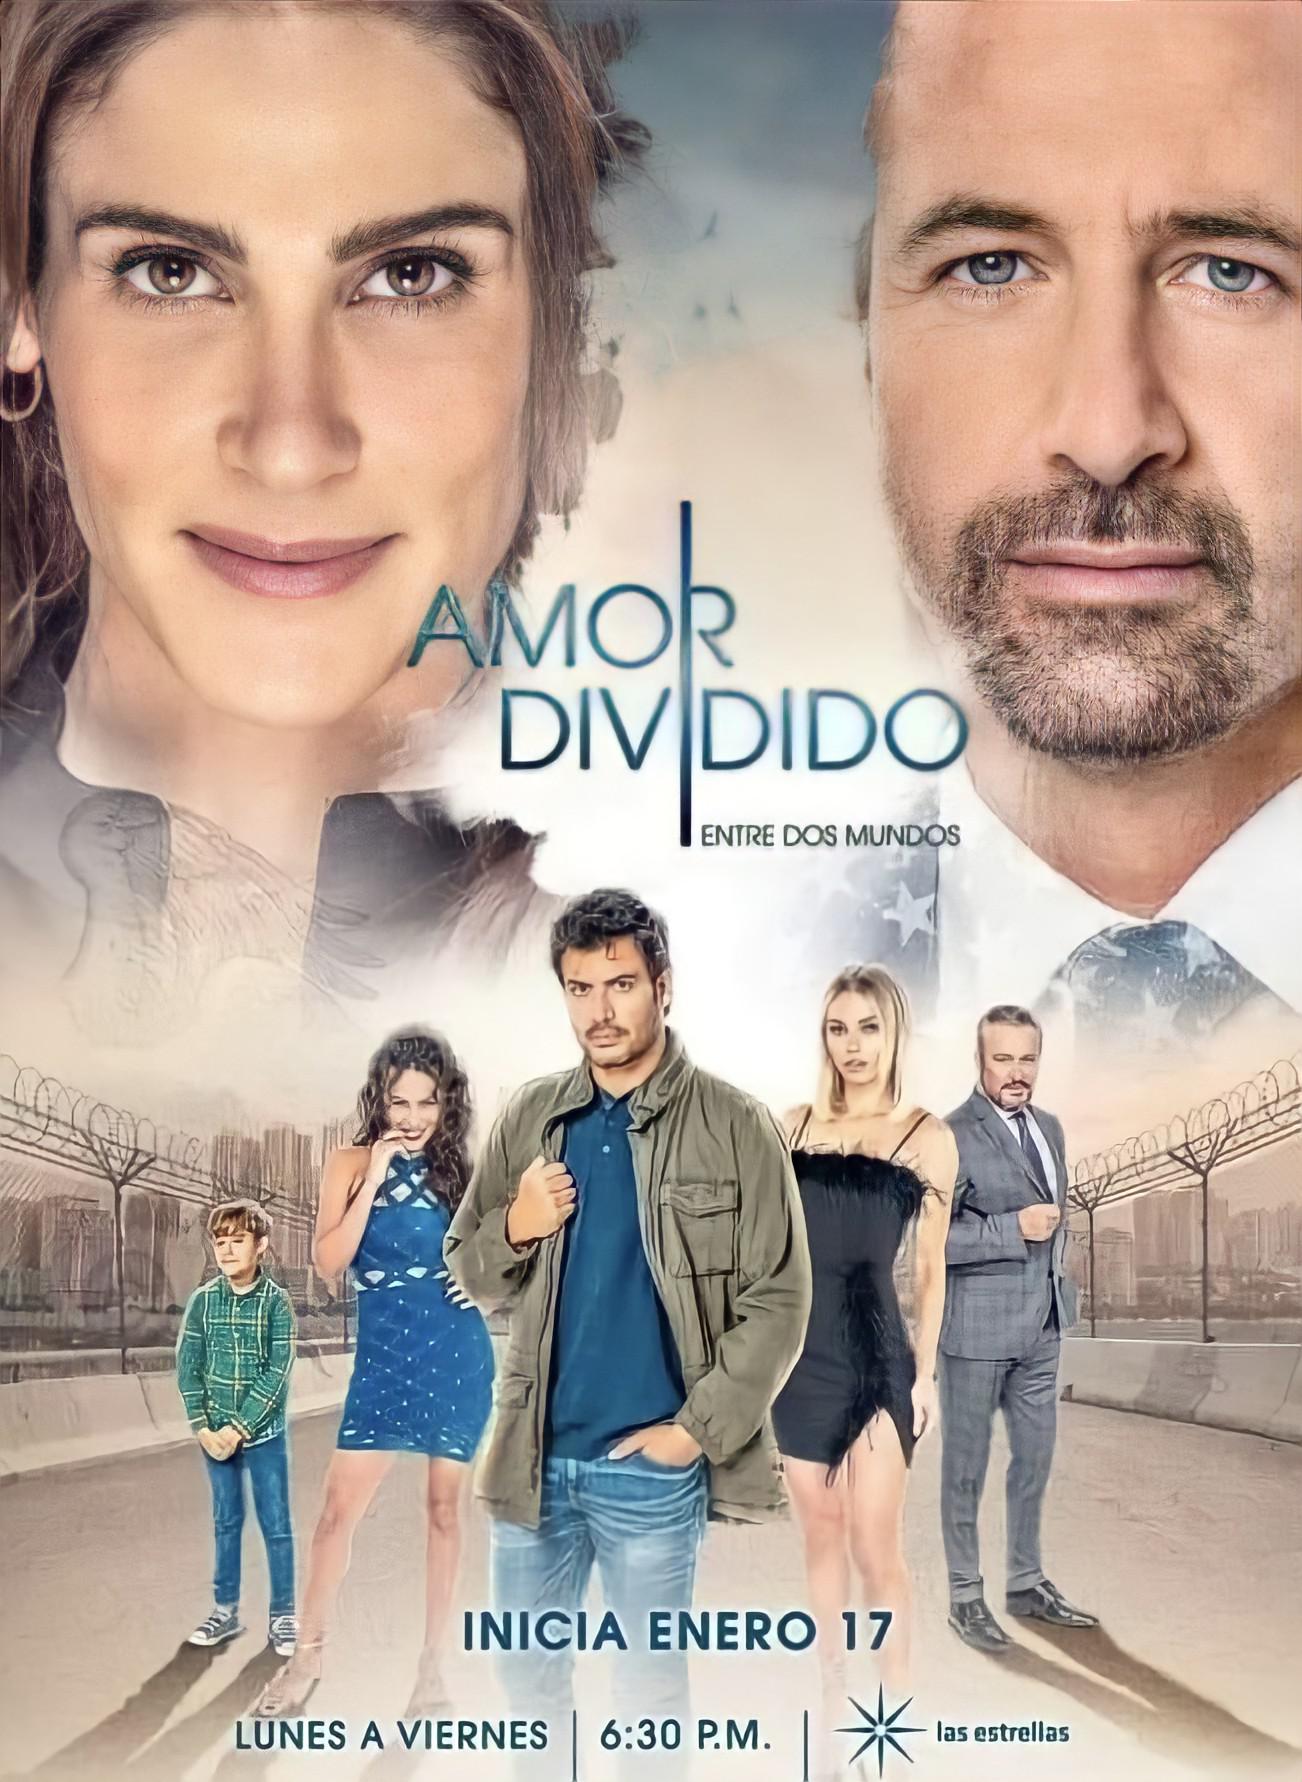 TV ratings for Amor Dividido in Ireland. Las Estrellas TV series